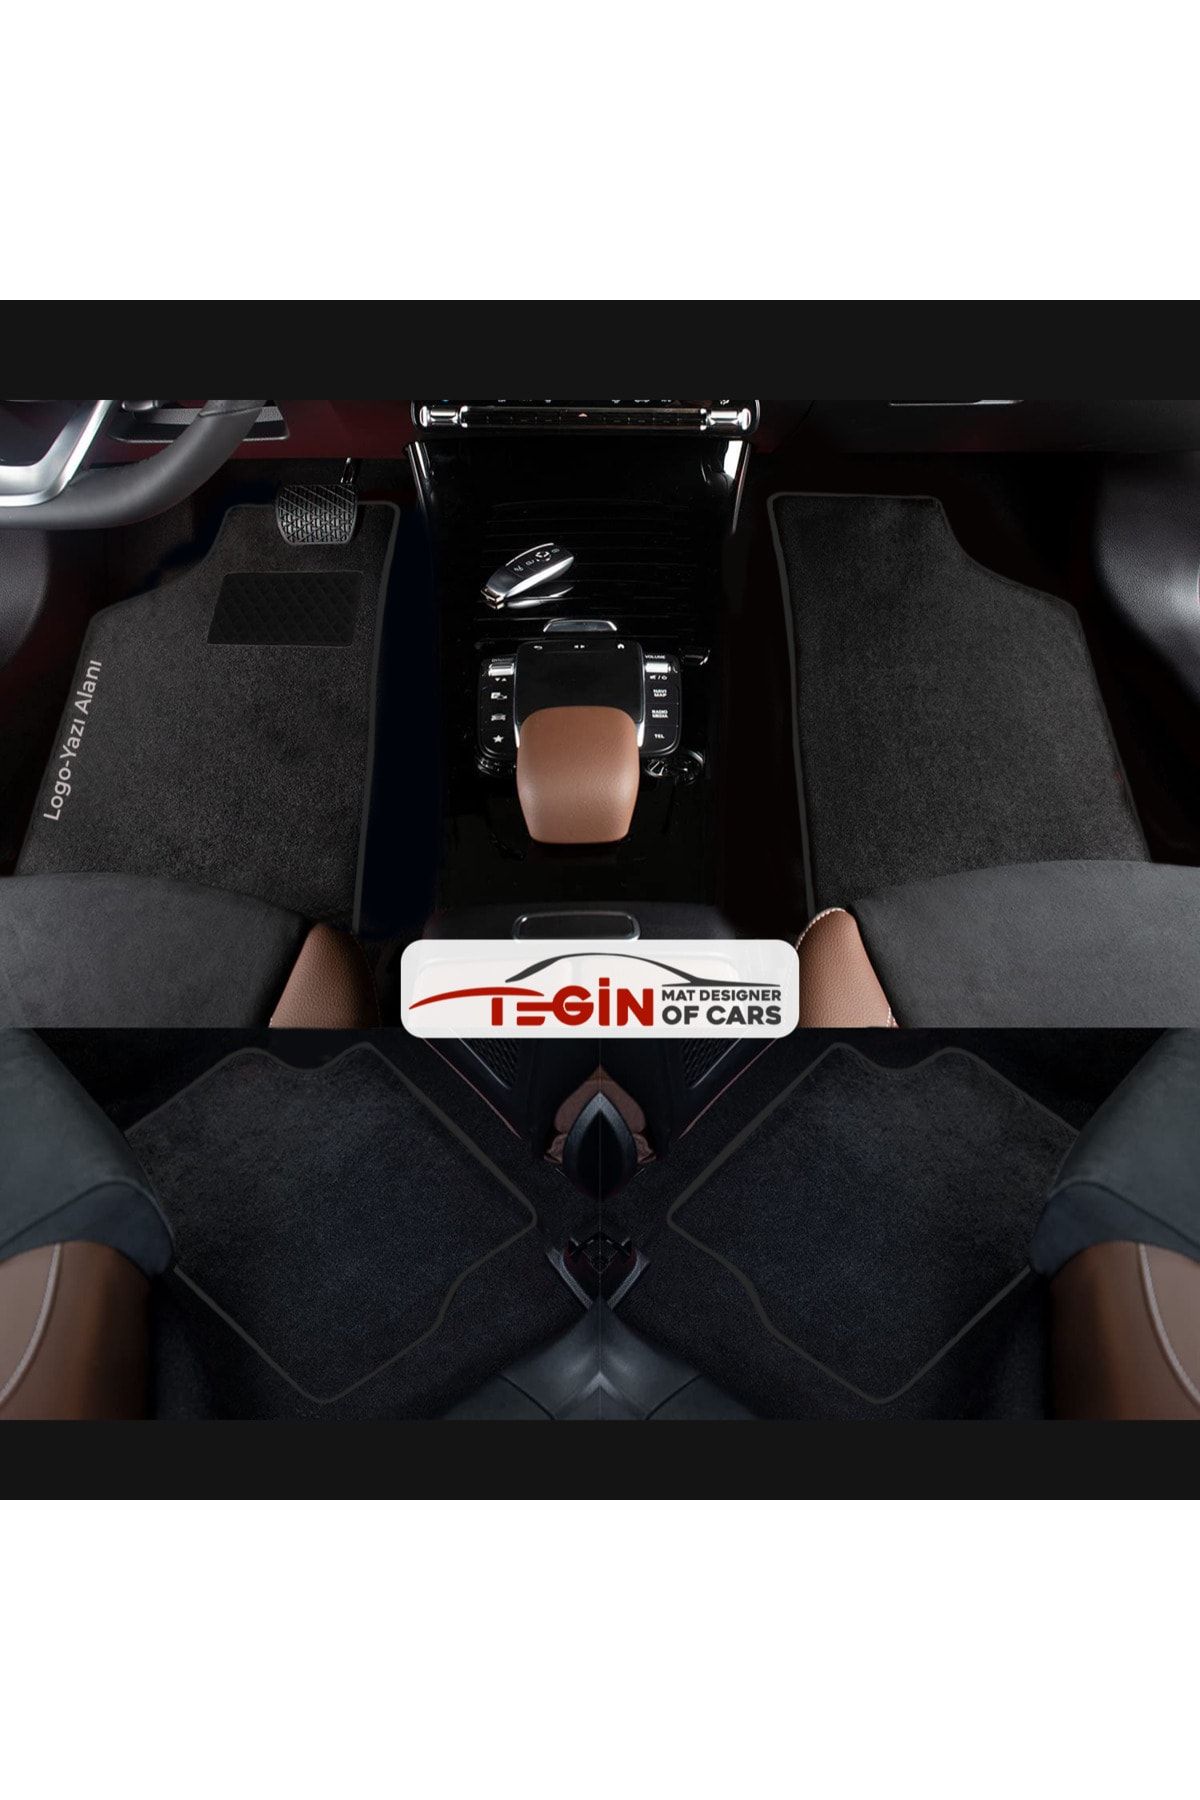 Tegin Mat Designer Of Cars Seat Leon 1m 1998-2004 Aracınıza Özel Prime Siyah Halı Siyah Kenar Halı Paspas